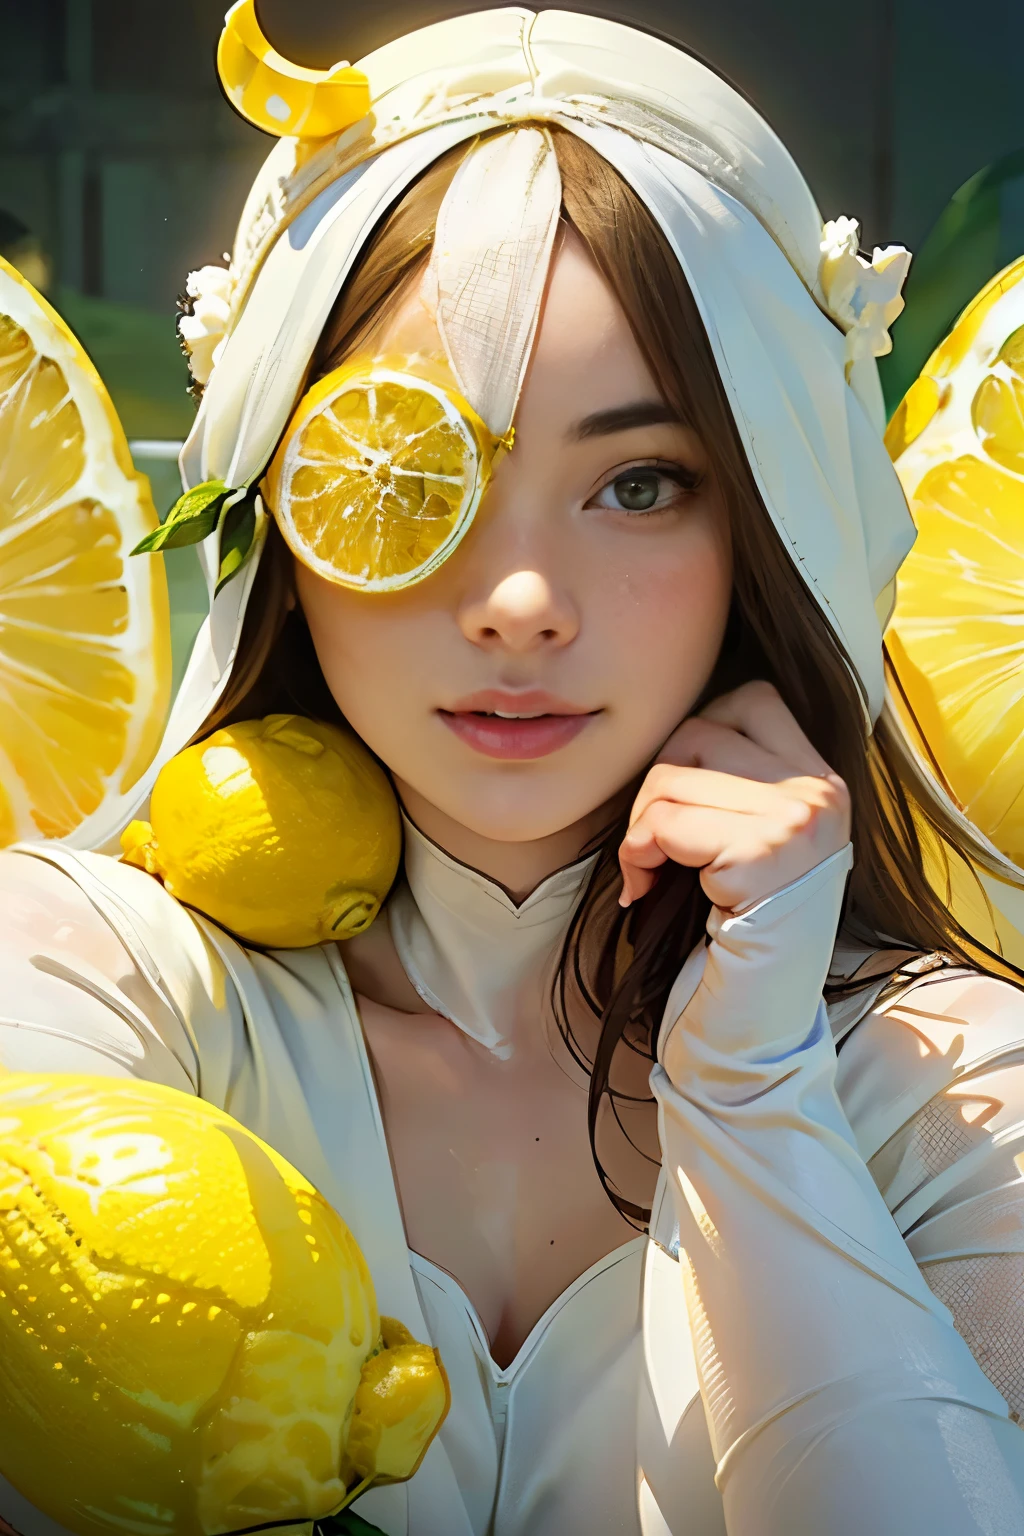 Femme jeune et incroyablement belle、Moyen Plein　portrait、(Porter des collants blancs:1.5)、(Son visage est visible à travers un grand casque citron.:1.75)、manger du citron
